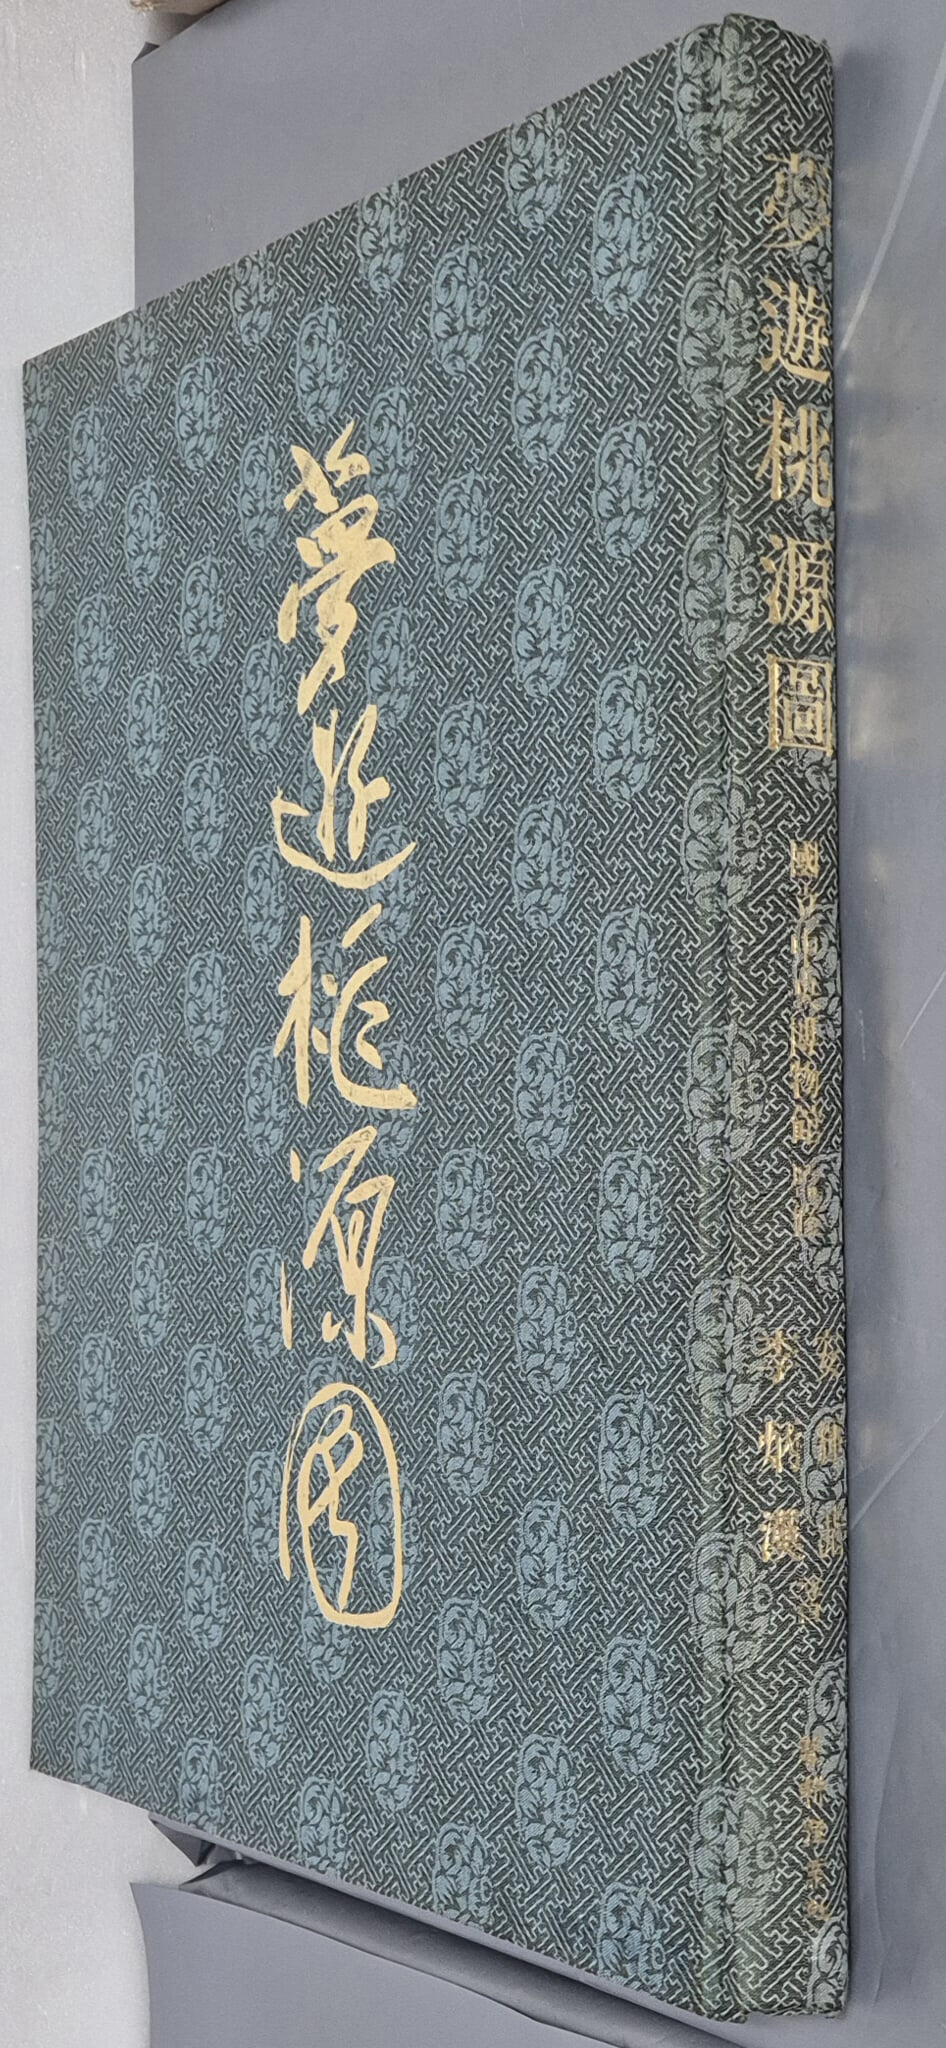 夢遊挑源圖 몽유도원도 - 1987년 10월 (한정판 제1852호)